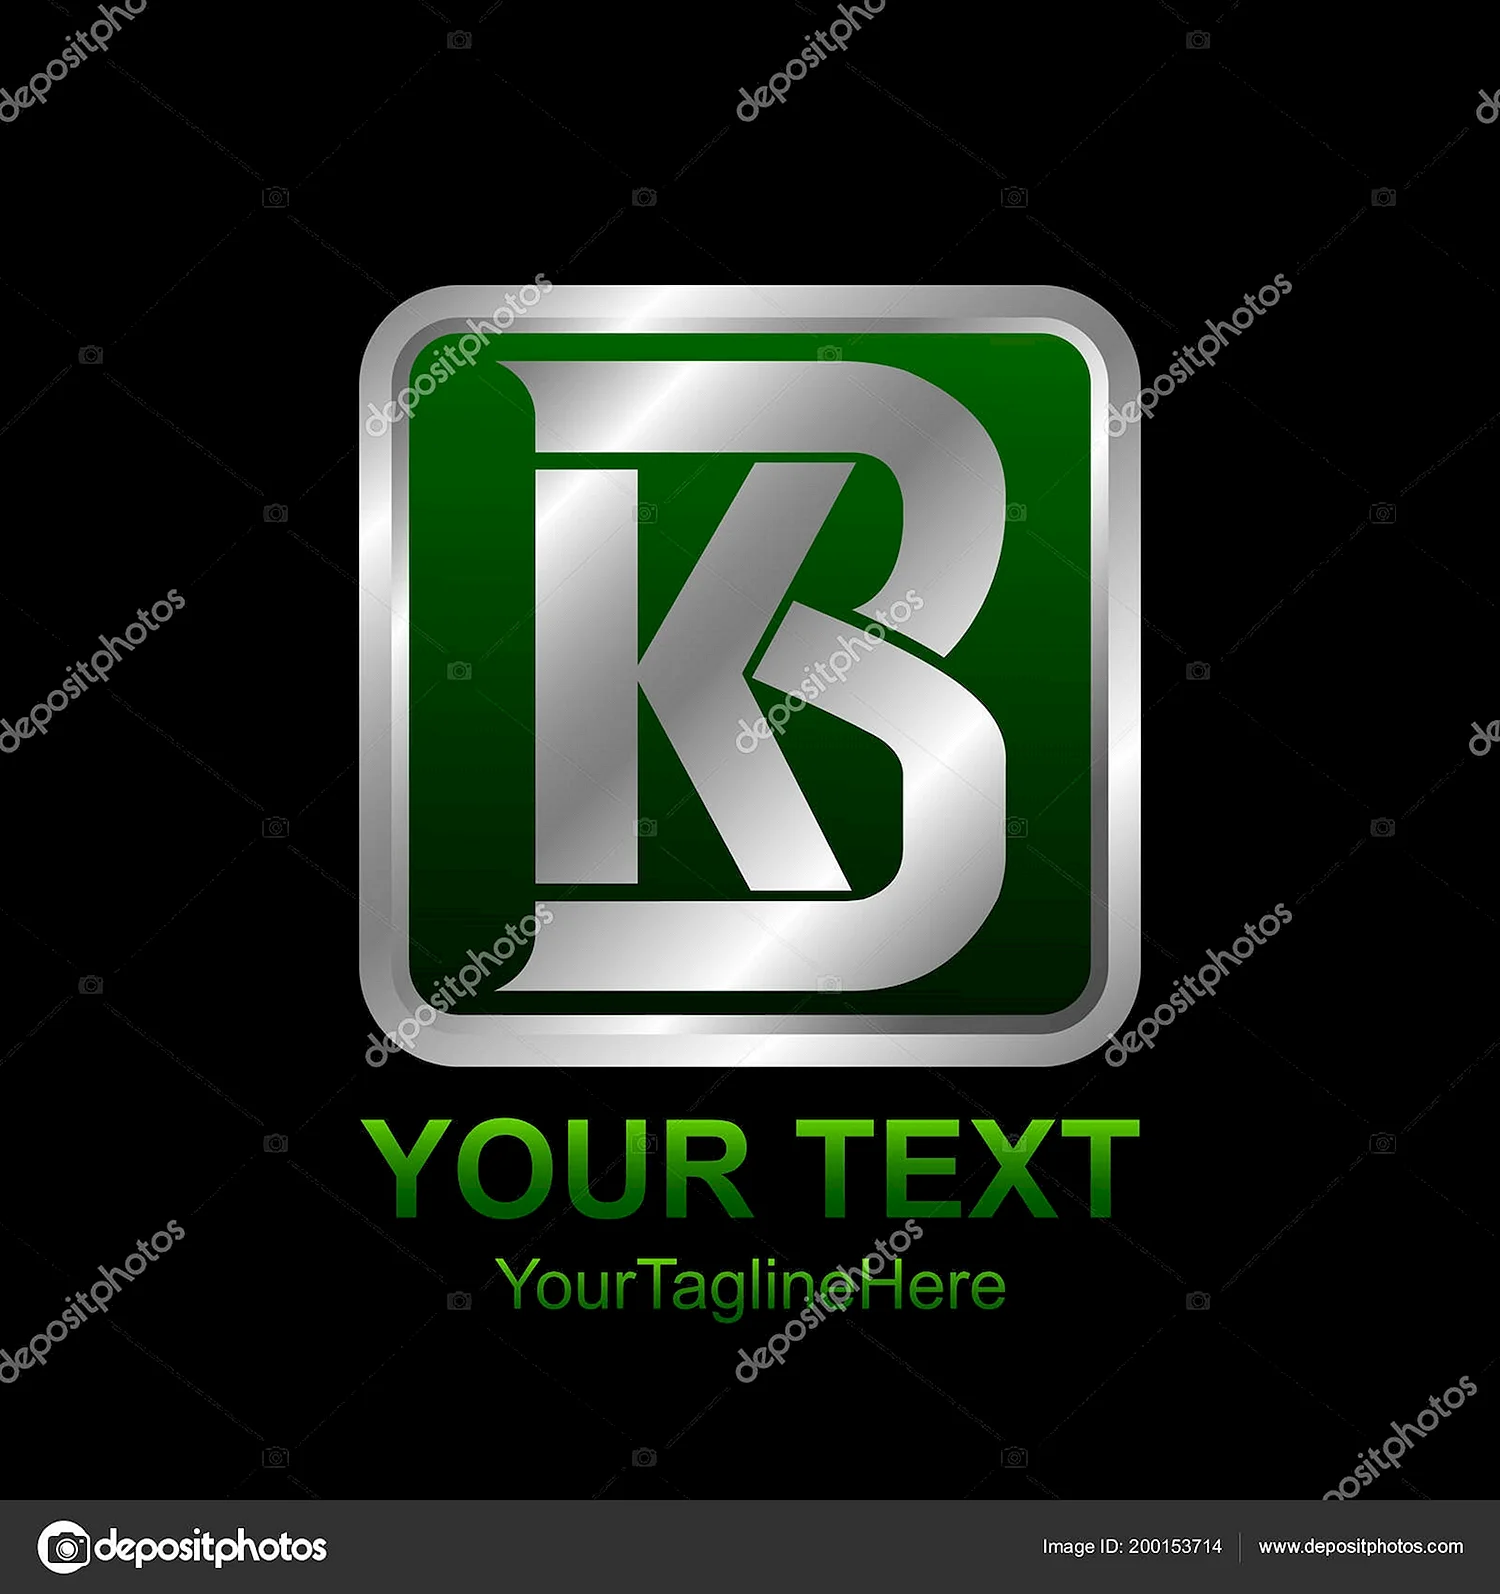 KB Letter logo